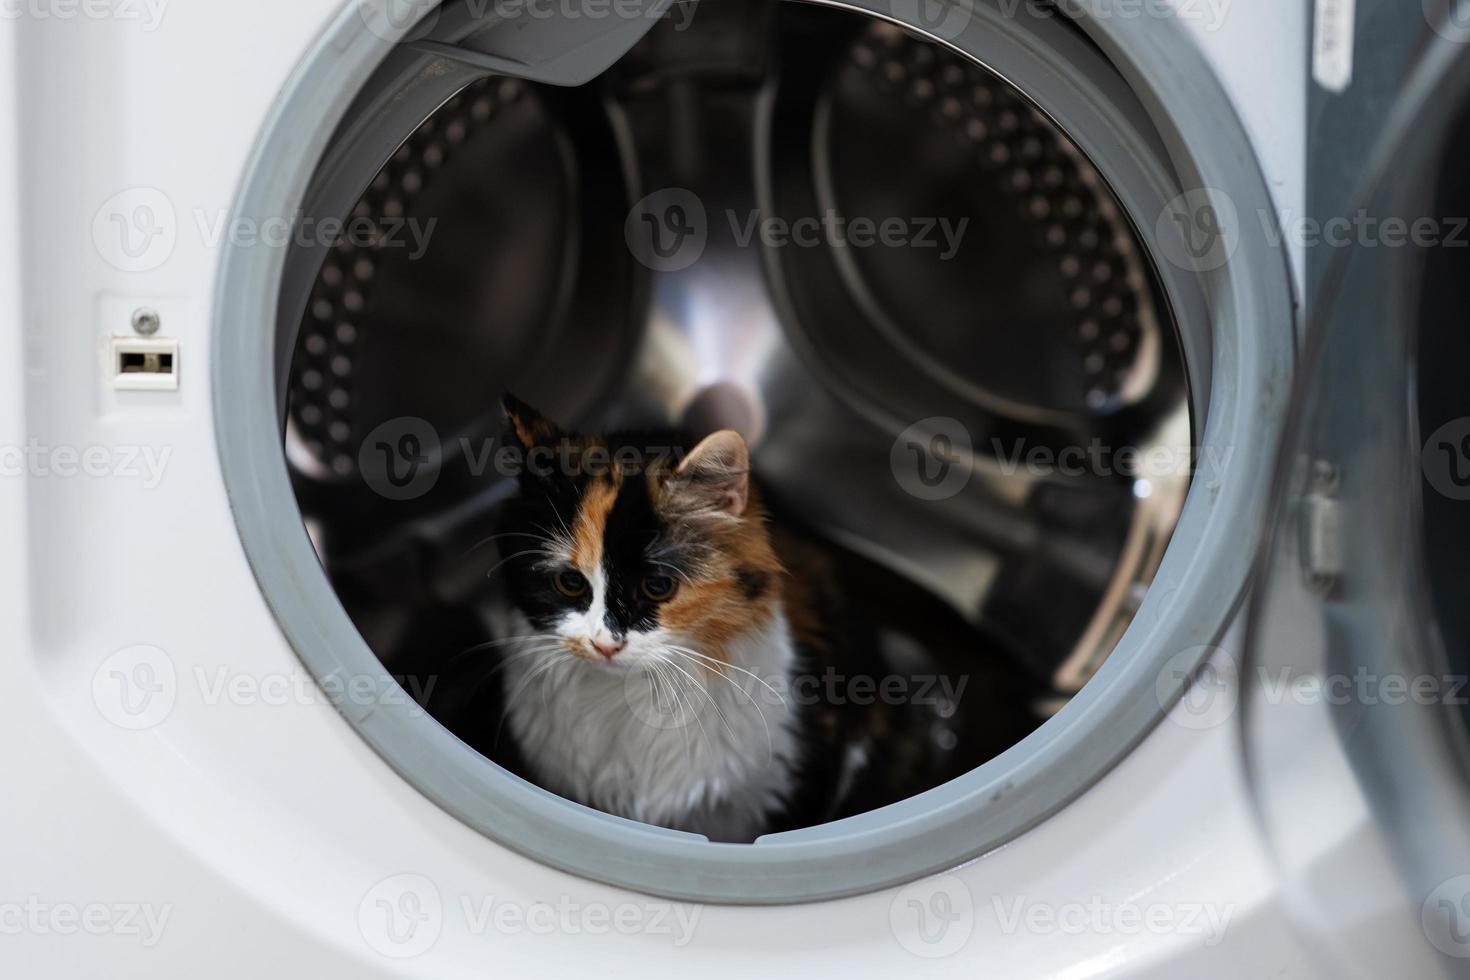 Kitty cat in the washing machine. photo